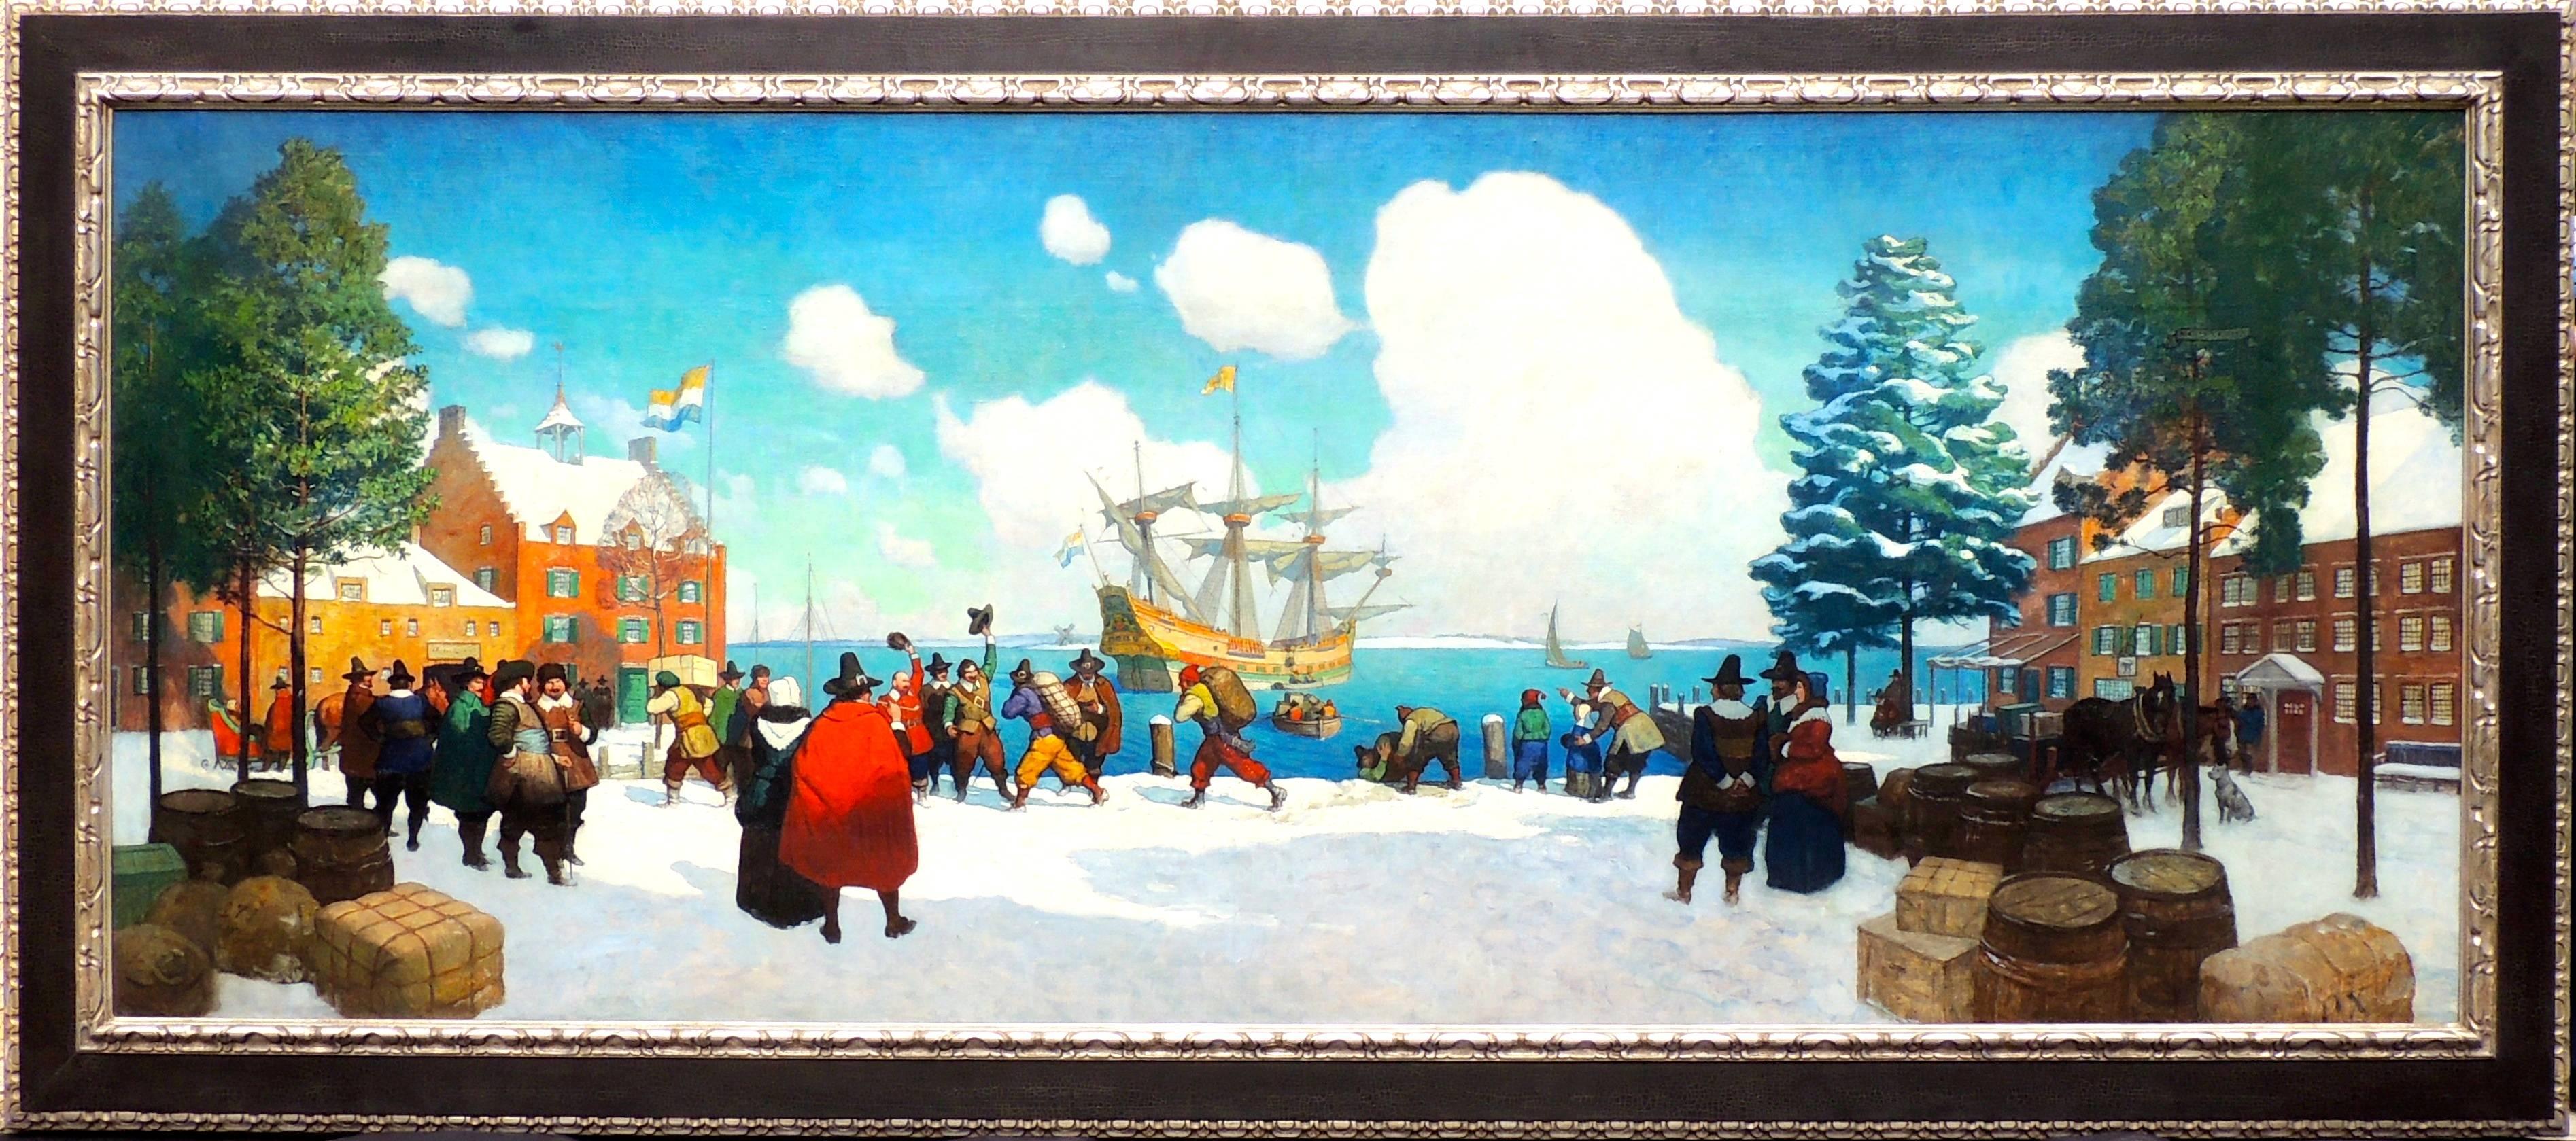 Weihnachtsschiff im alten New Yorker Stil – Painting von Newell Convers Wyeth